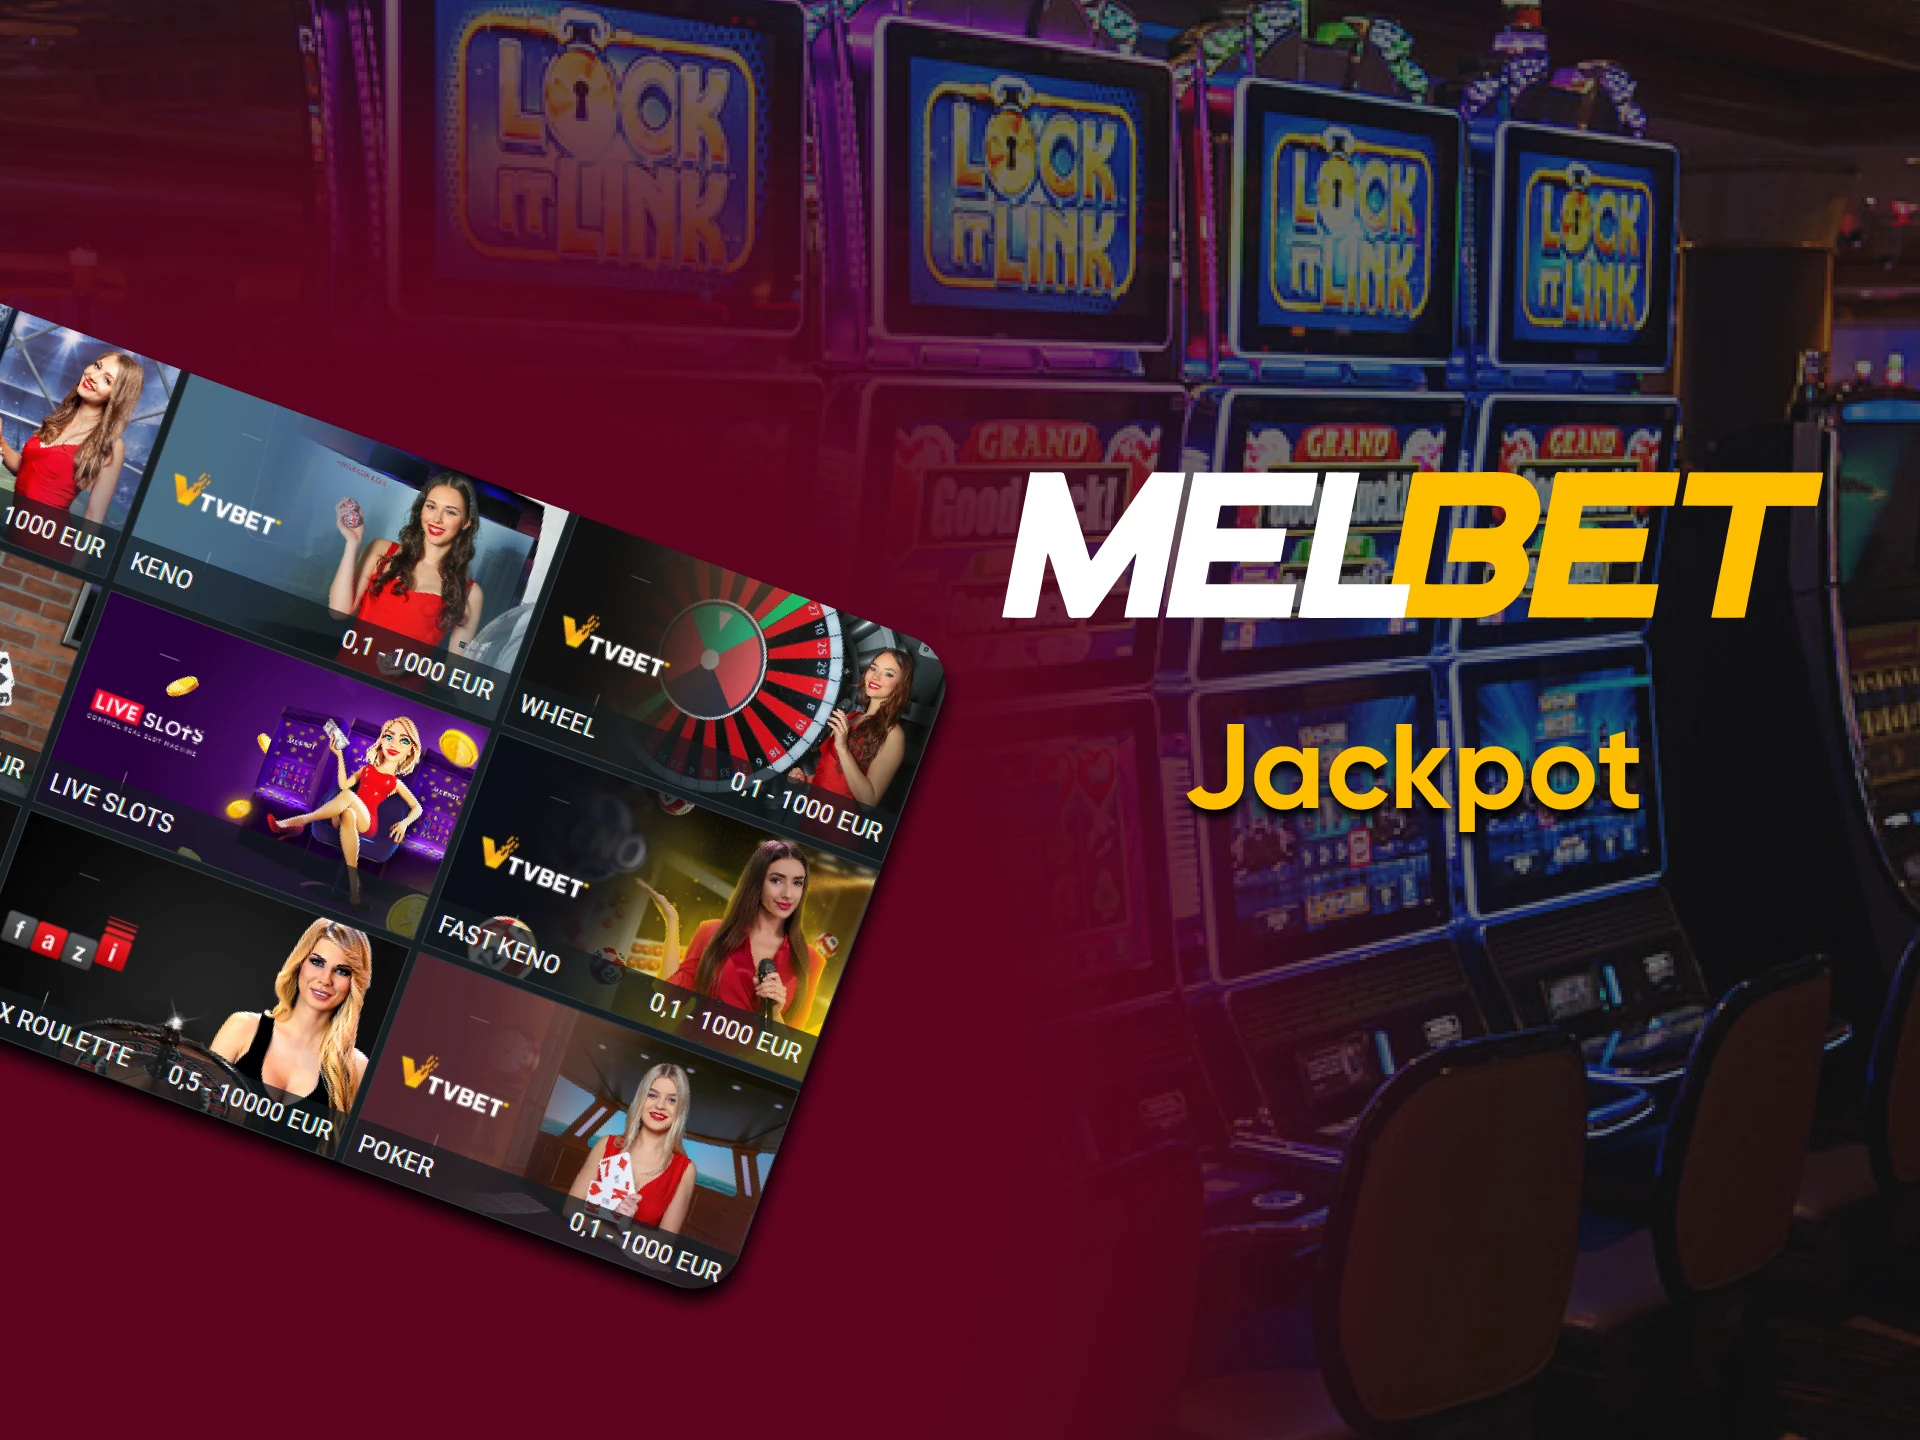 Para jogos de cassino ao vivo na Melbet, escolha Jackpot.